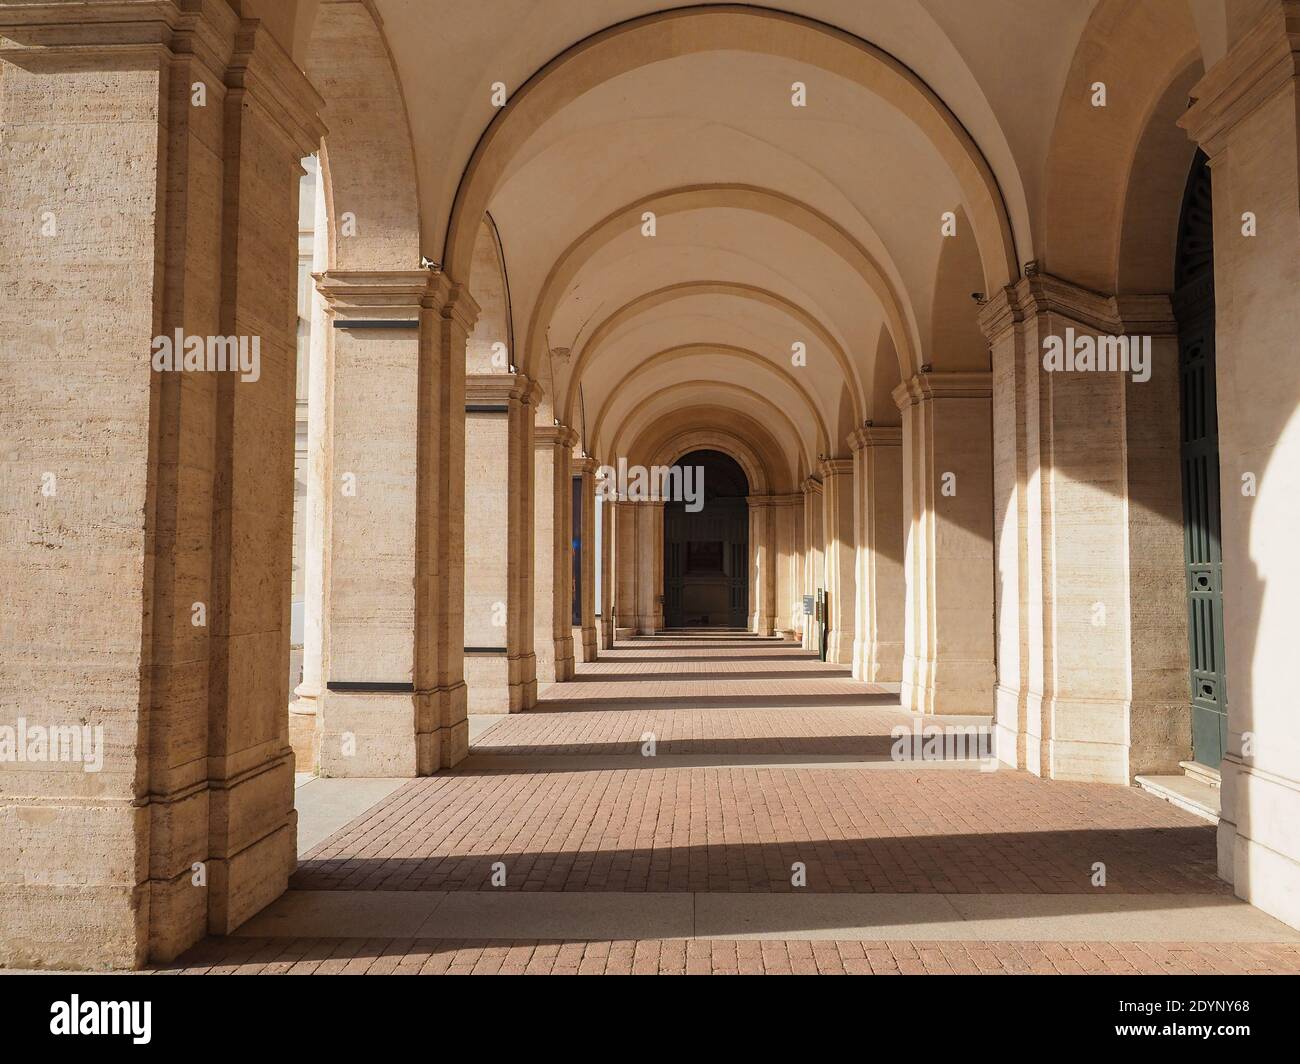 Couloir extérieur voûté ou entrée à la Galerie nationale d'Art ancien avec une collection renommée d'œuvres d'art au Palais baroque Barberini, Rome, Italie. Banque D'Images